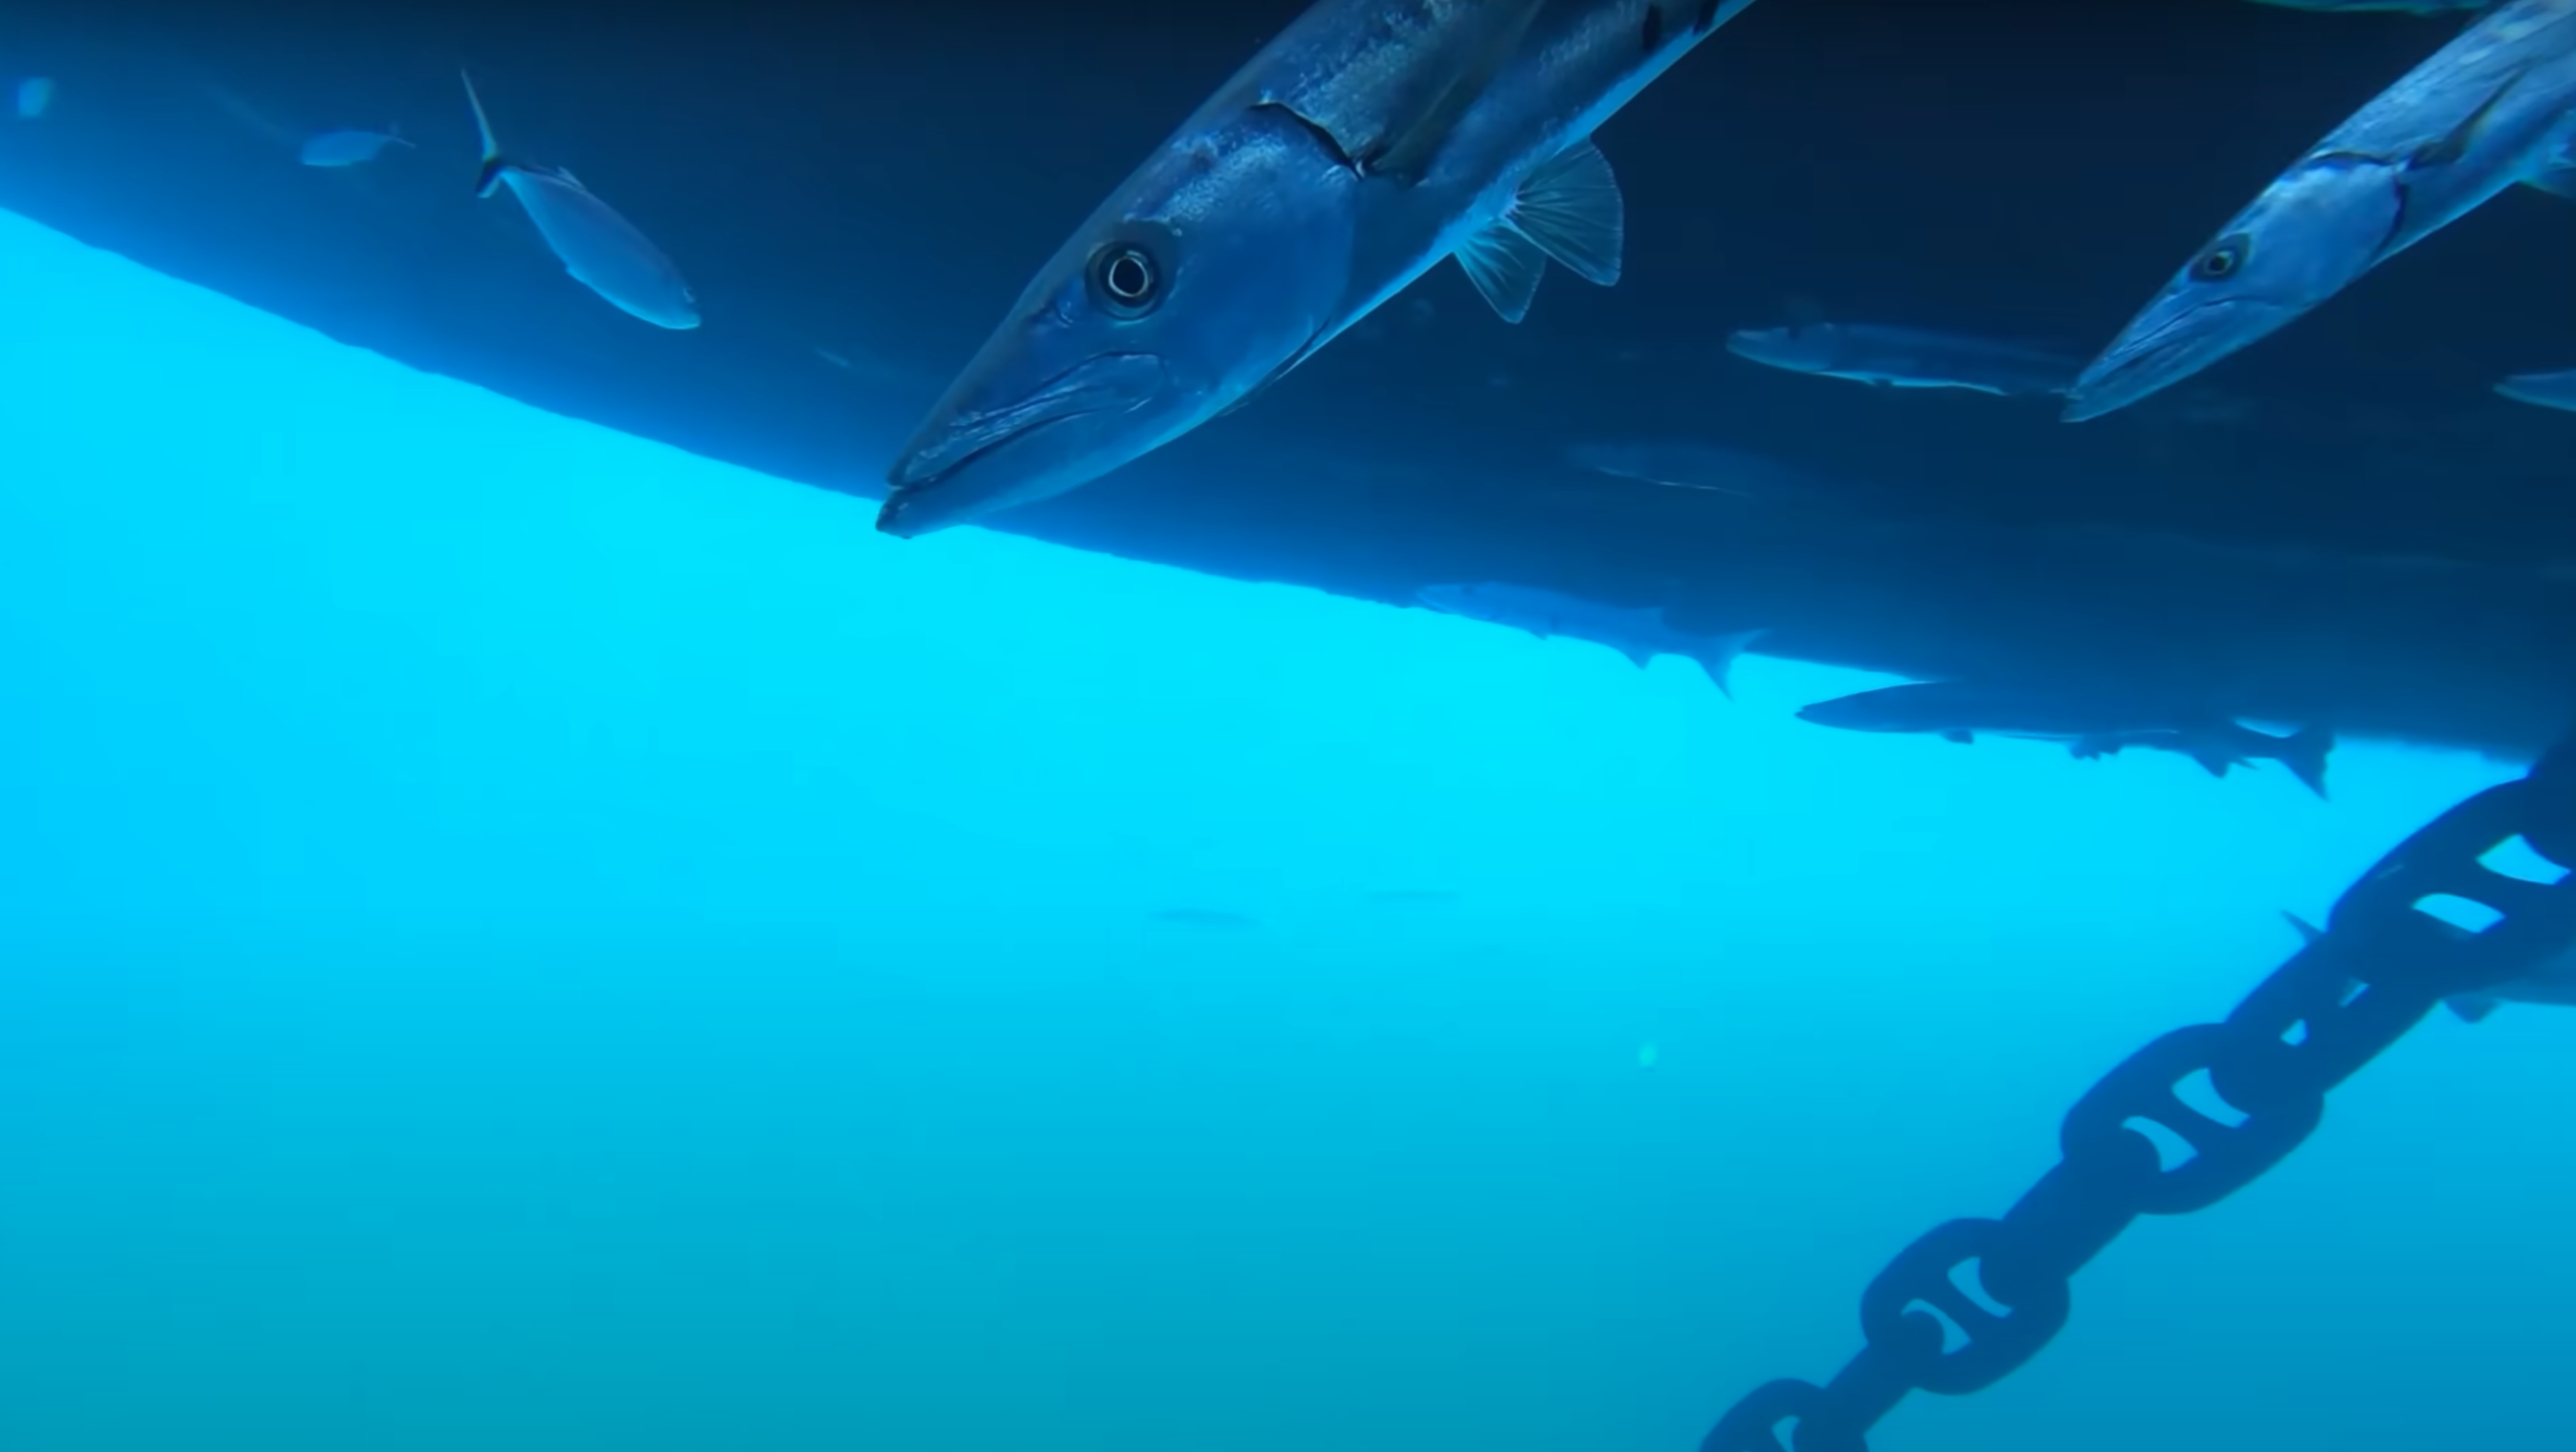 Captura del vídeo grabado por una GoPro bajo un crucero.